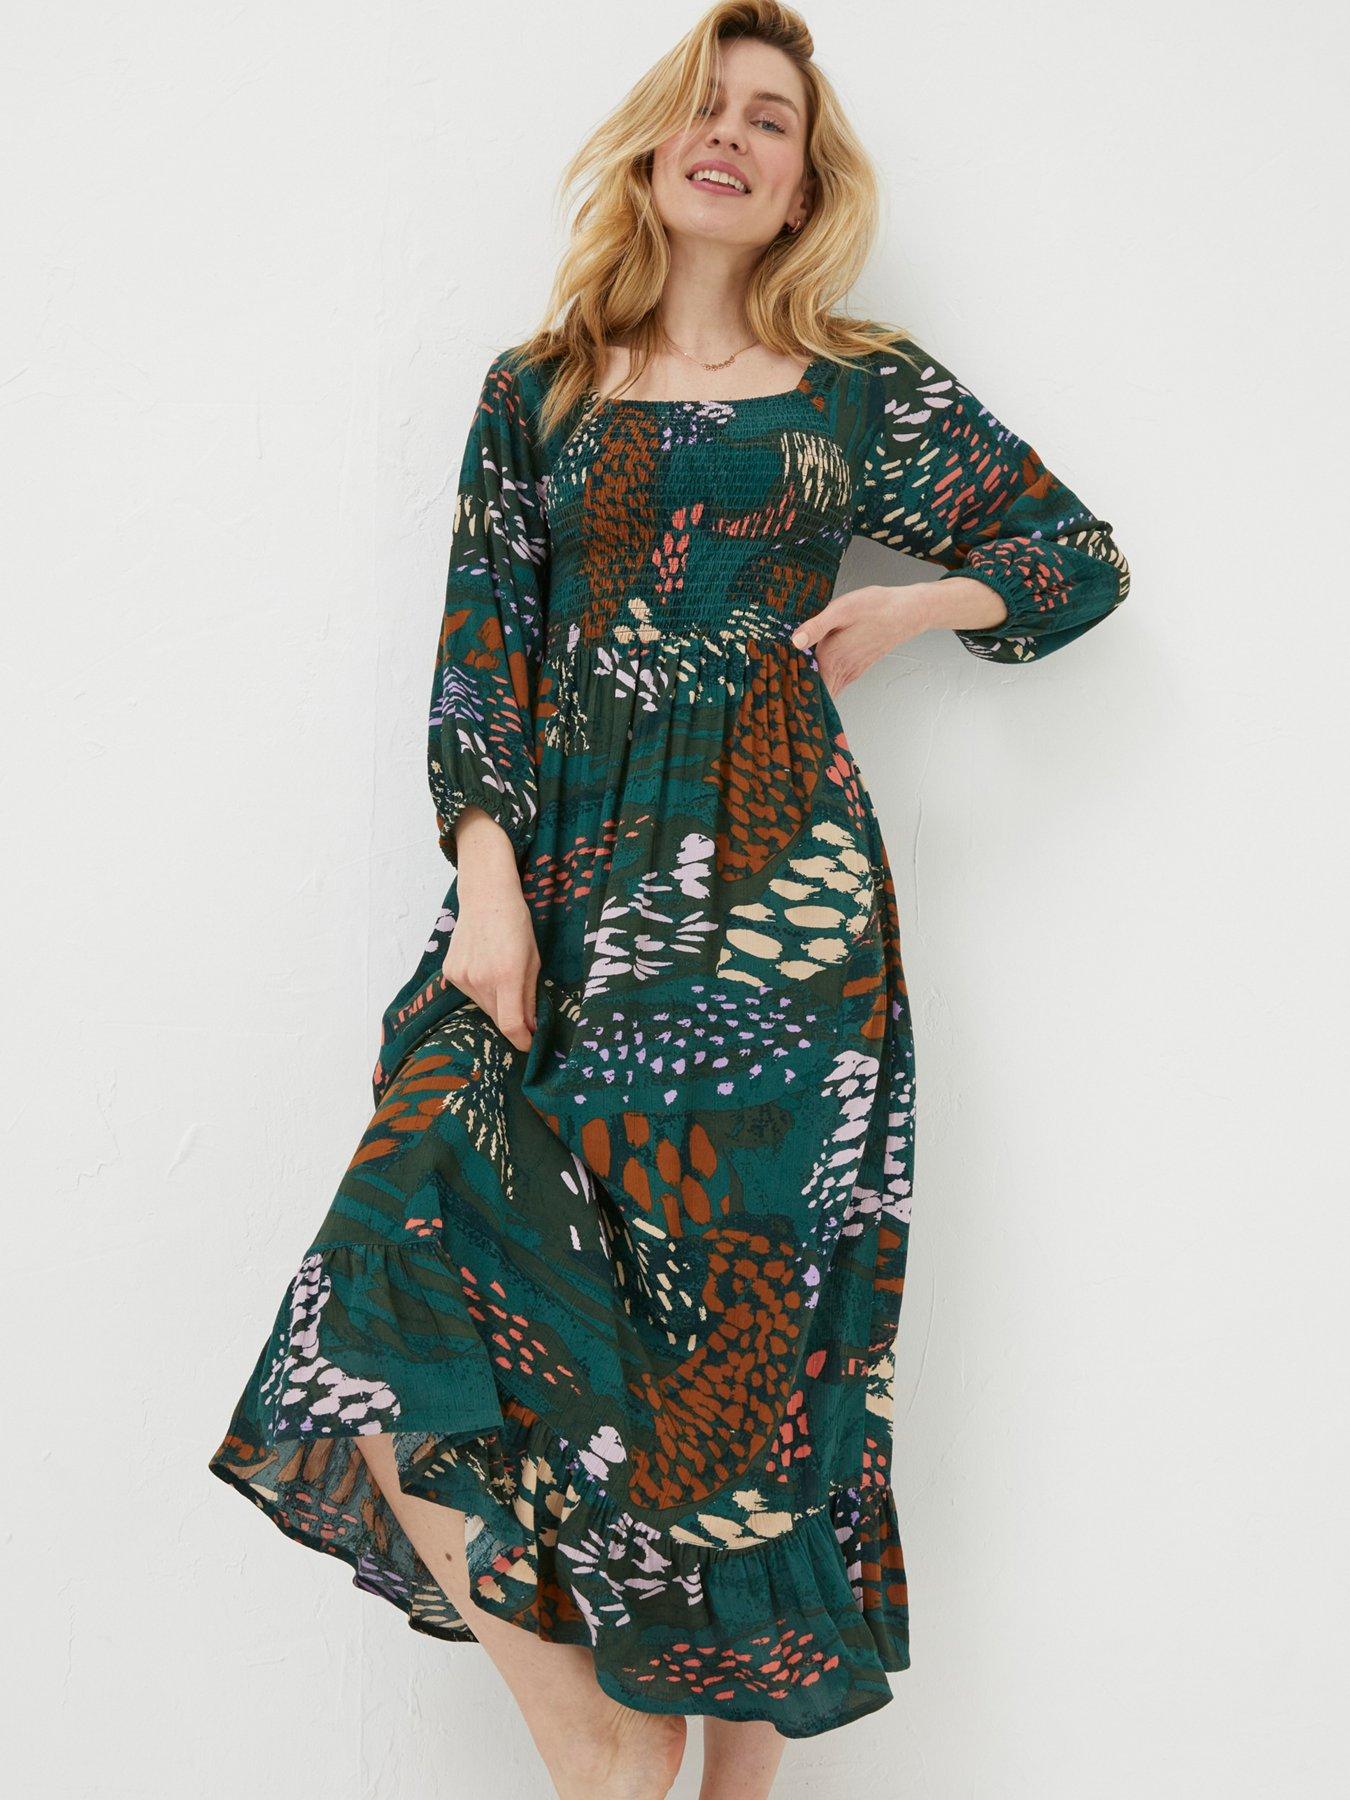 Maisy Frill Hem Wrap Style Maxi Dress In Navy Ditsy Floral Print